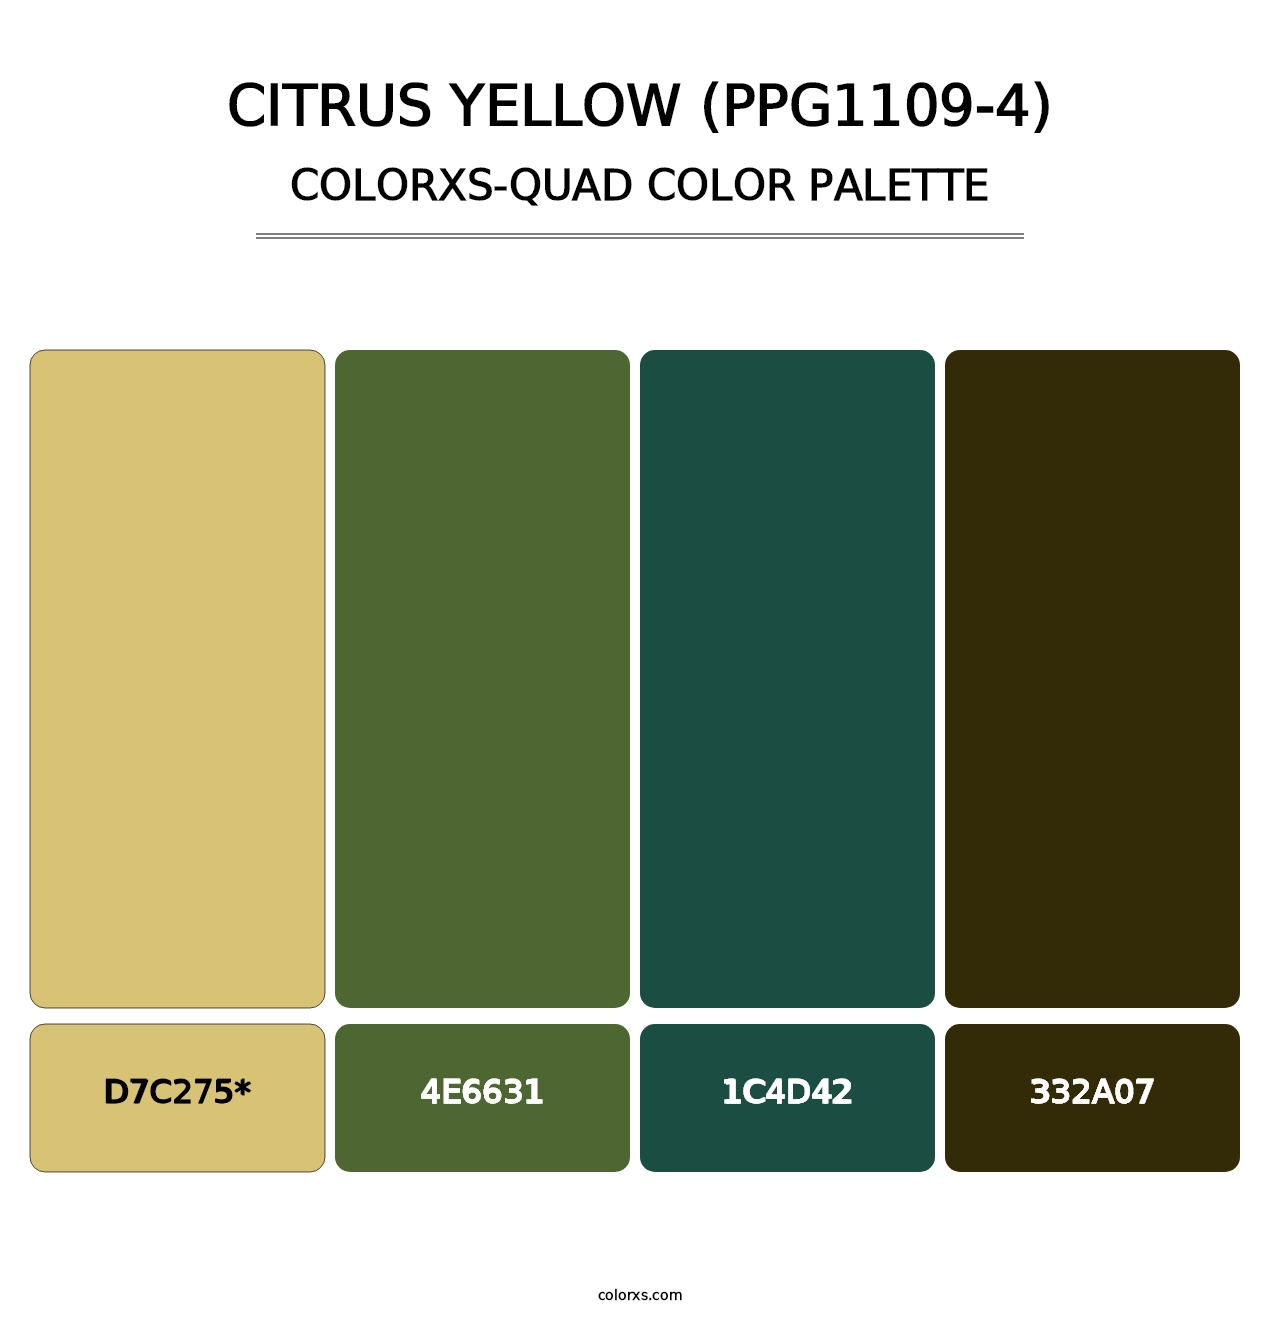 Citrus Yellow (PPG1109-4) - Colorxs Quad Palette